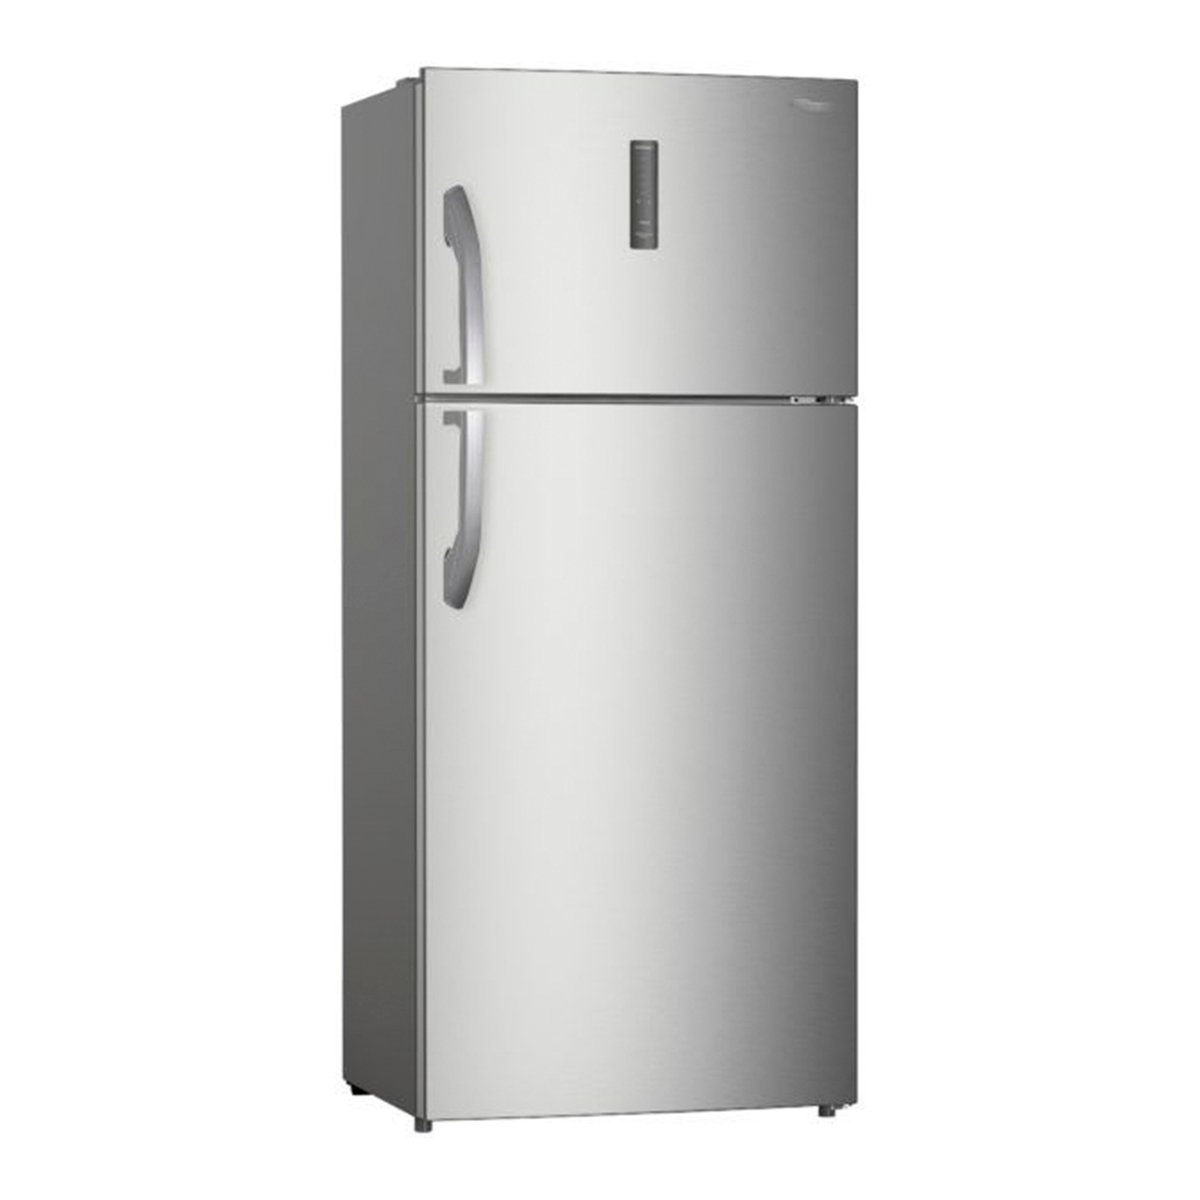 Super General Double Door Refrigerator, 700 L, Silver, SG R715 I